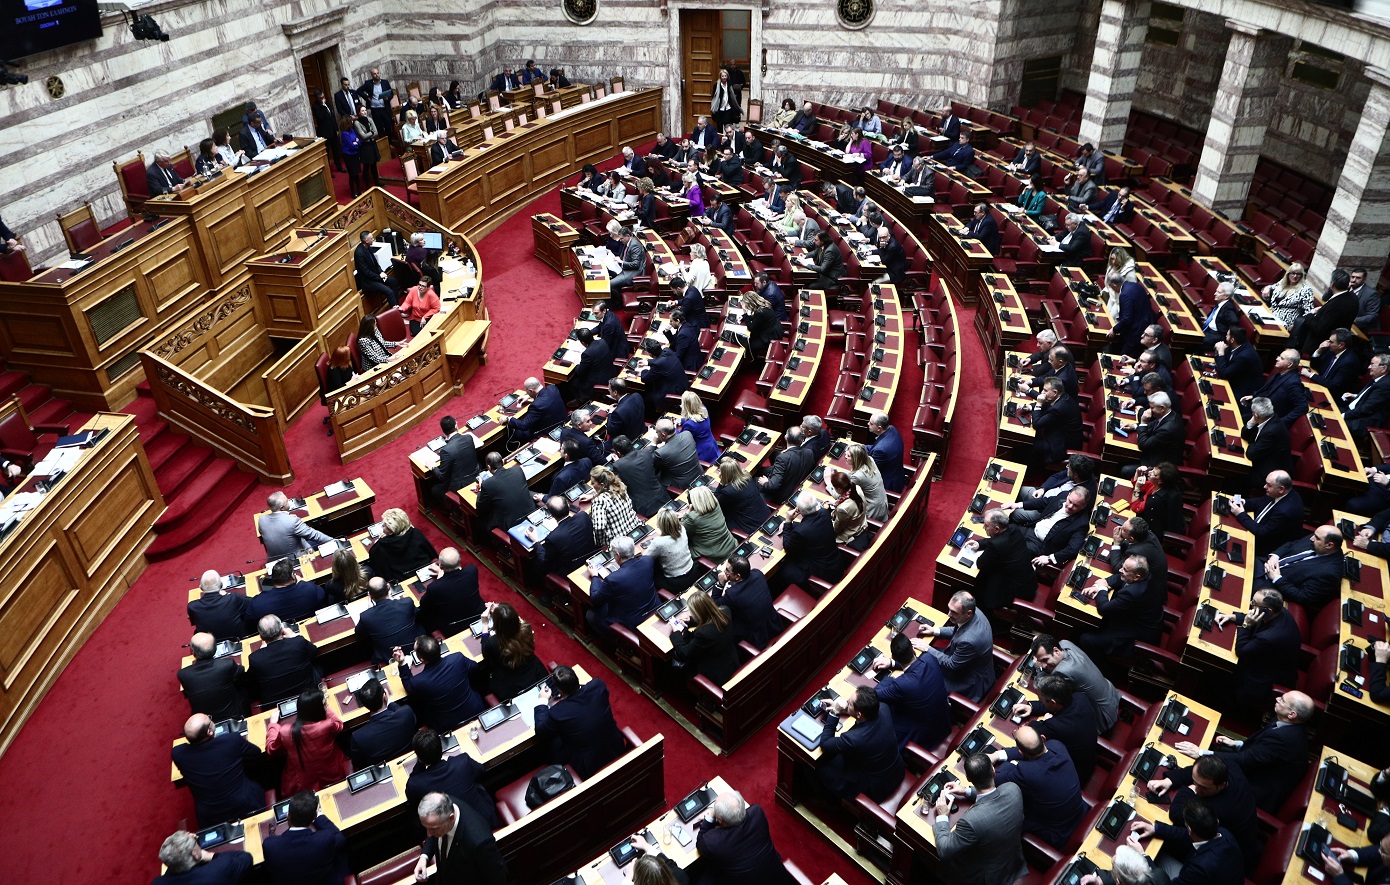 Βουλή: Με ευρεία πλειοψηφία ψηφίστηκε το νομοσχέδιο για την ενιαία αγορά ψηφιακών υπηρεσιών